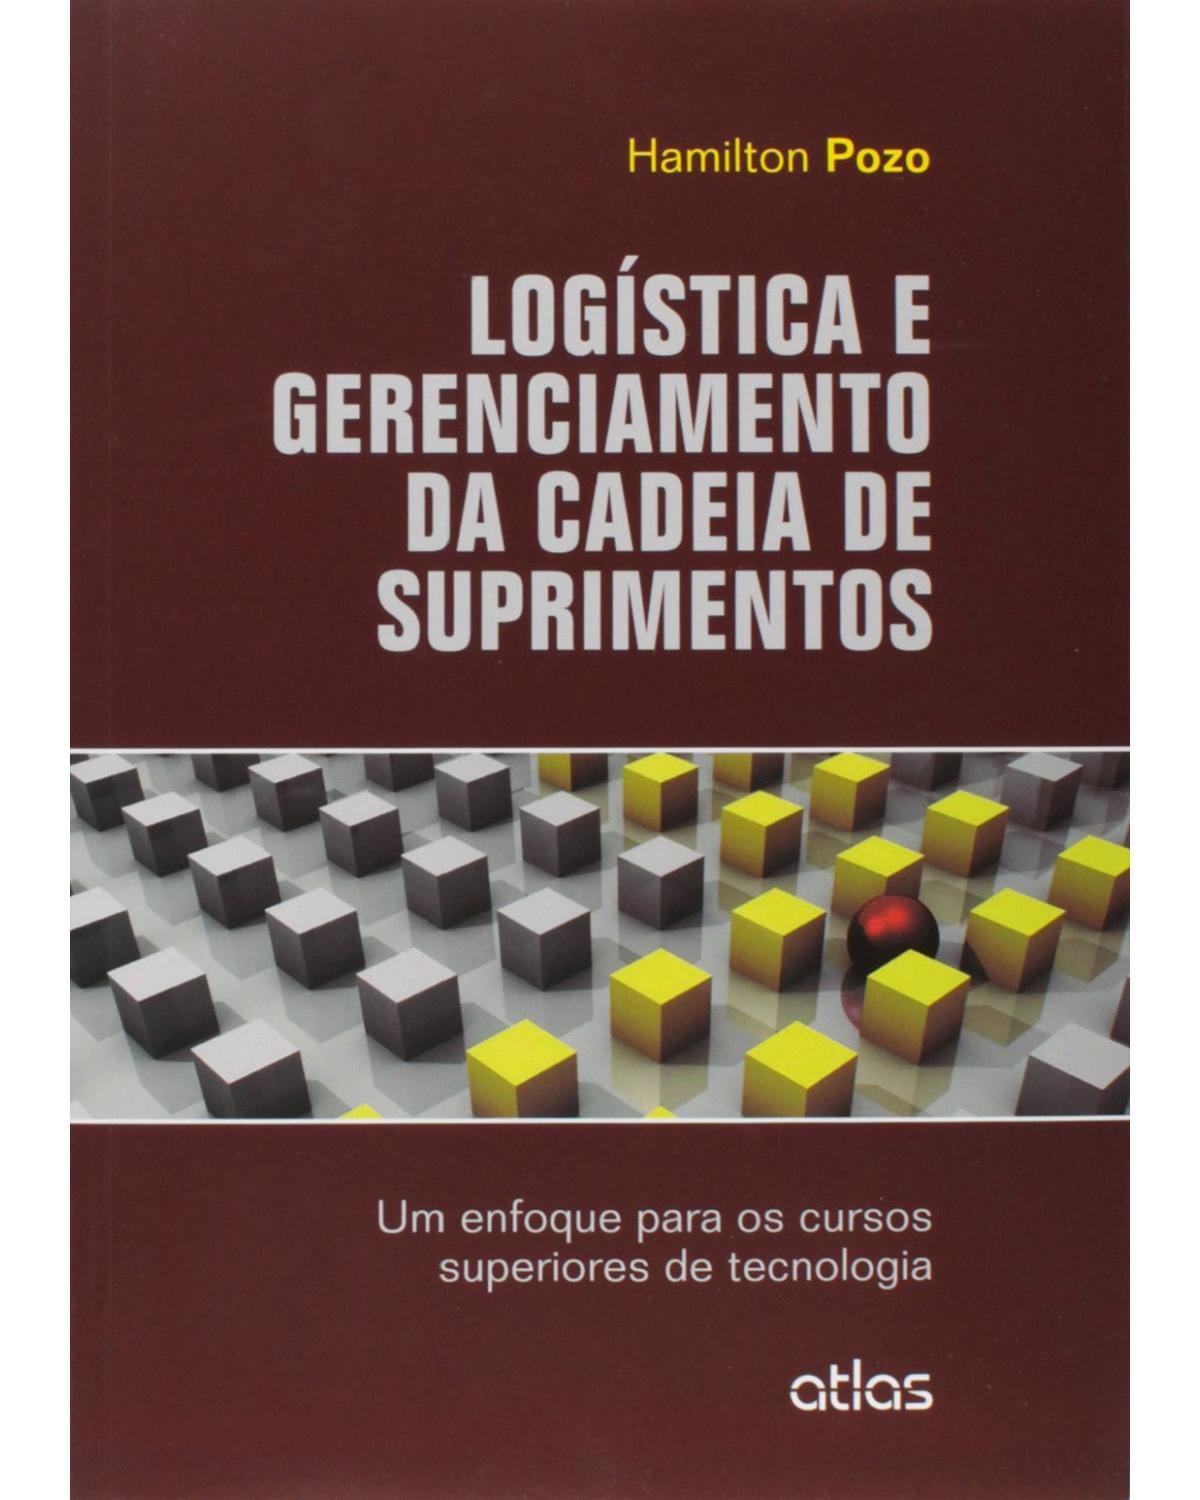 Logística e gerenciamento da cadeia de suprimentos - Um enfoque para os cursos superiores de tecnologia - 1ª Edição | 2015